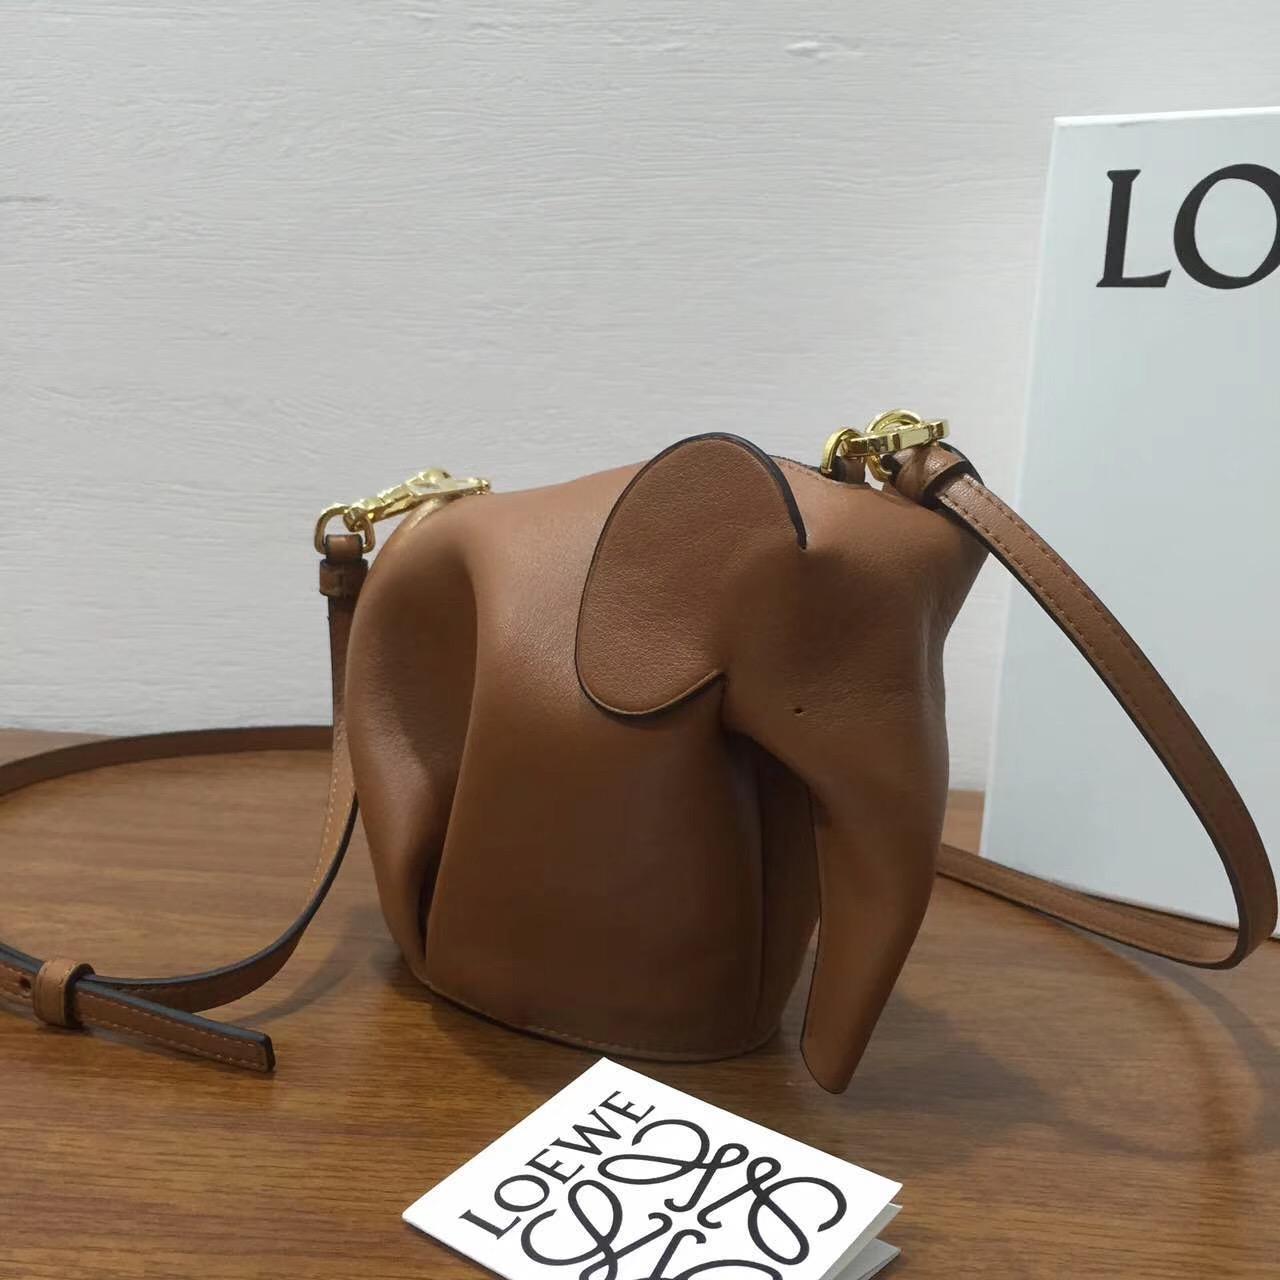 羅意威包包 Loewe Elephant Mini Bag tan/white 迷妳包 小牛皮大象包